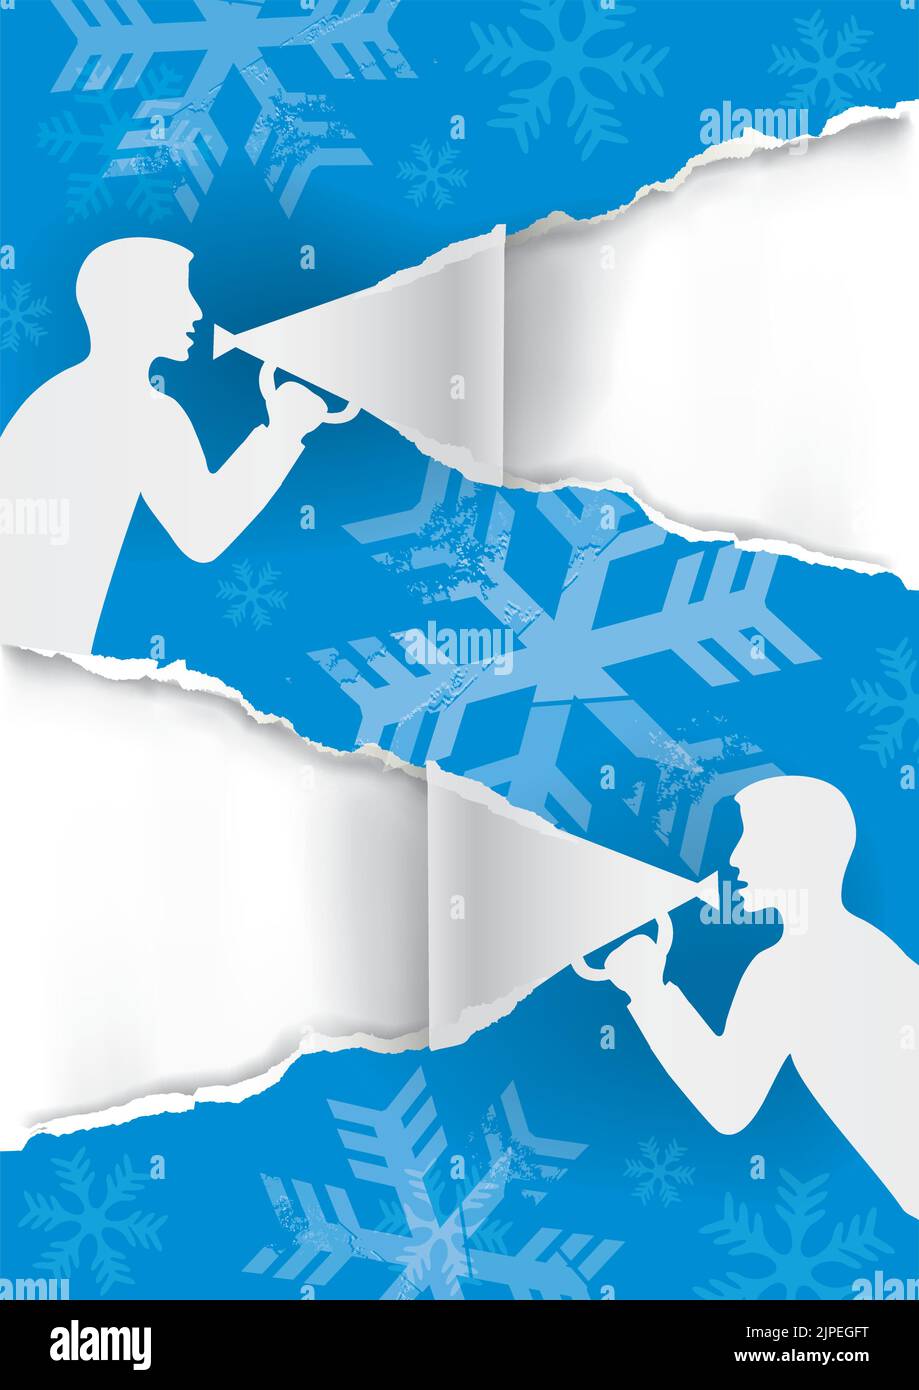 Zwei Männer mit Megaphon zerreißend blauem Papier, Weihnachts-Banner-Vorlage. Illustration von Papier Hintergrund mit Grunge stilisierte Schneeflocken. Stock Vektor